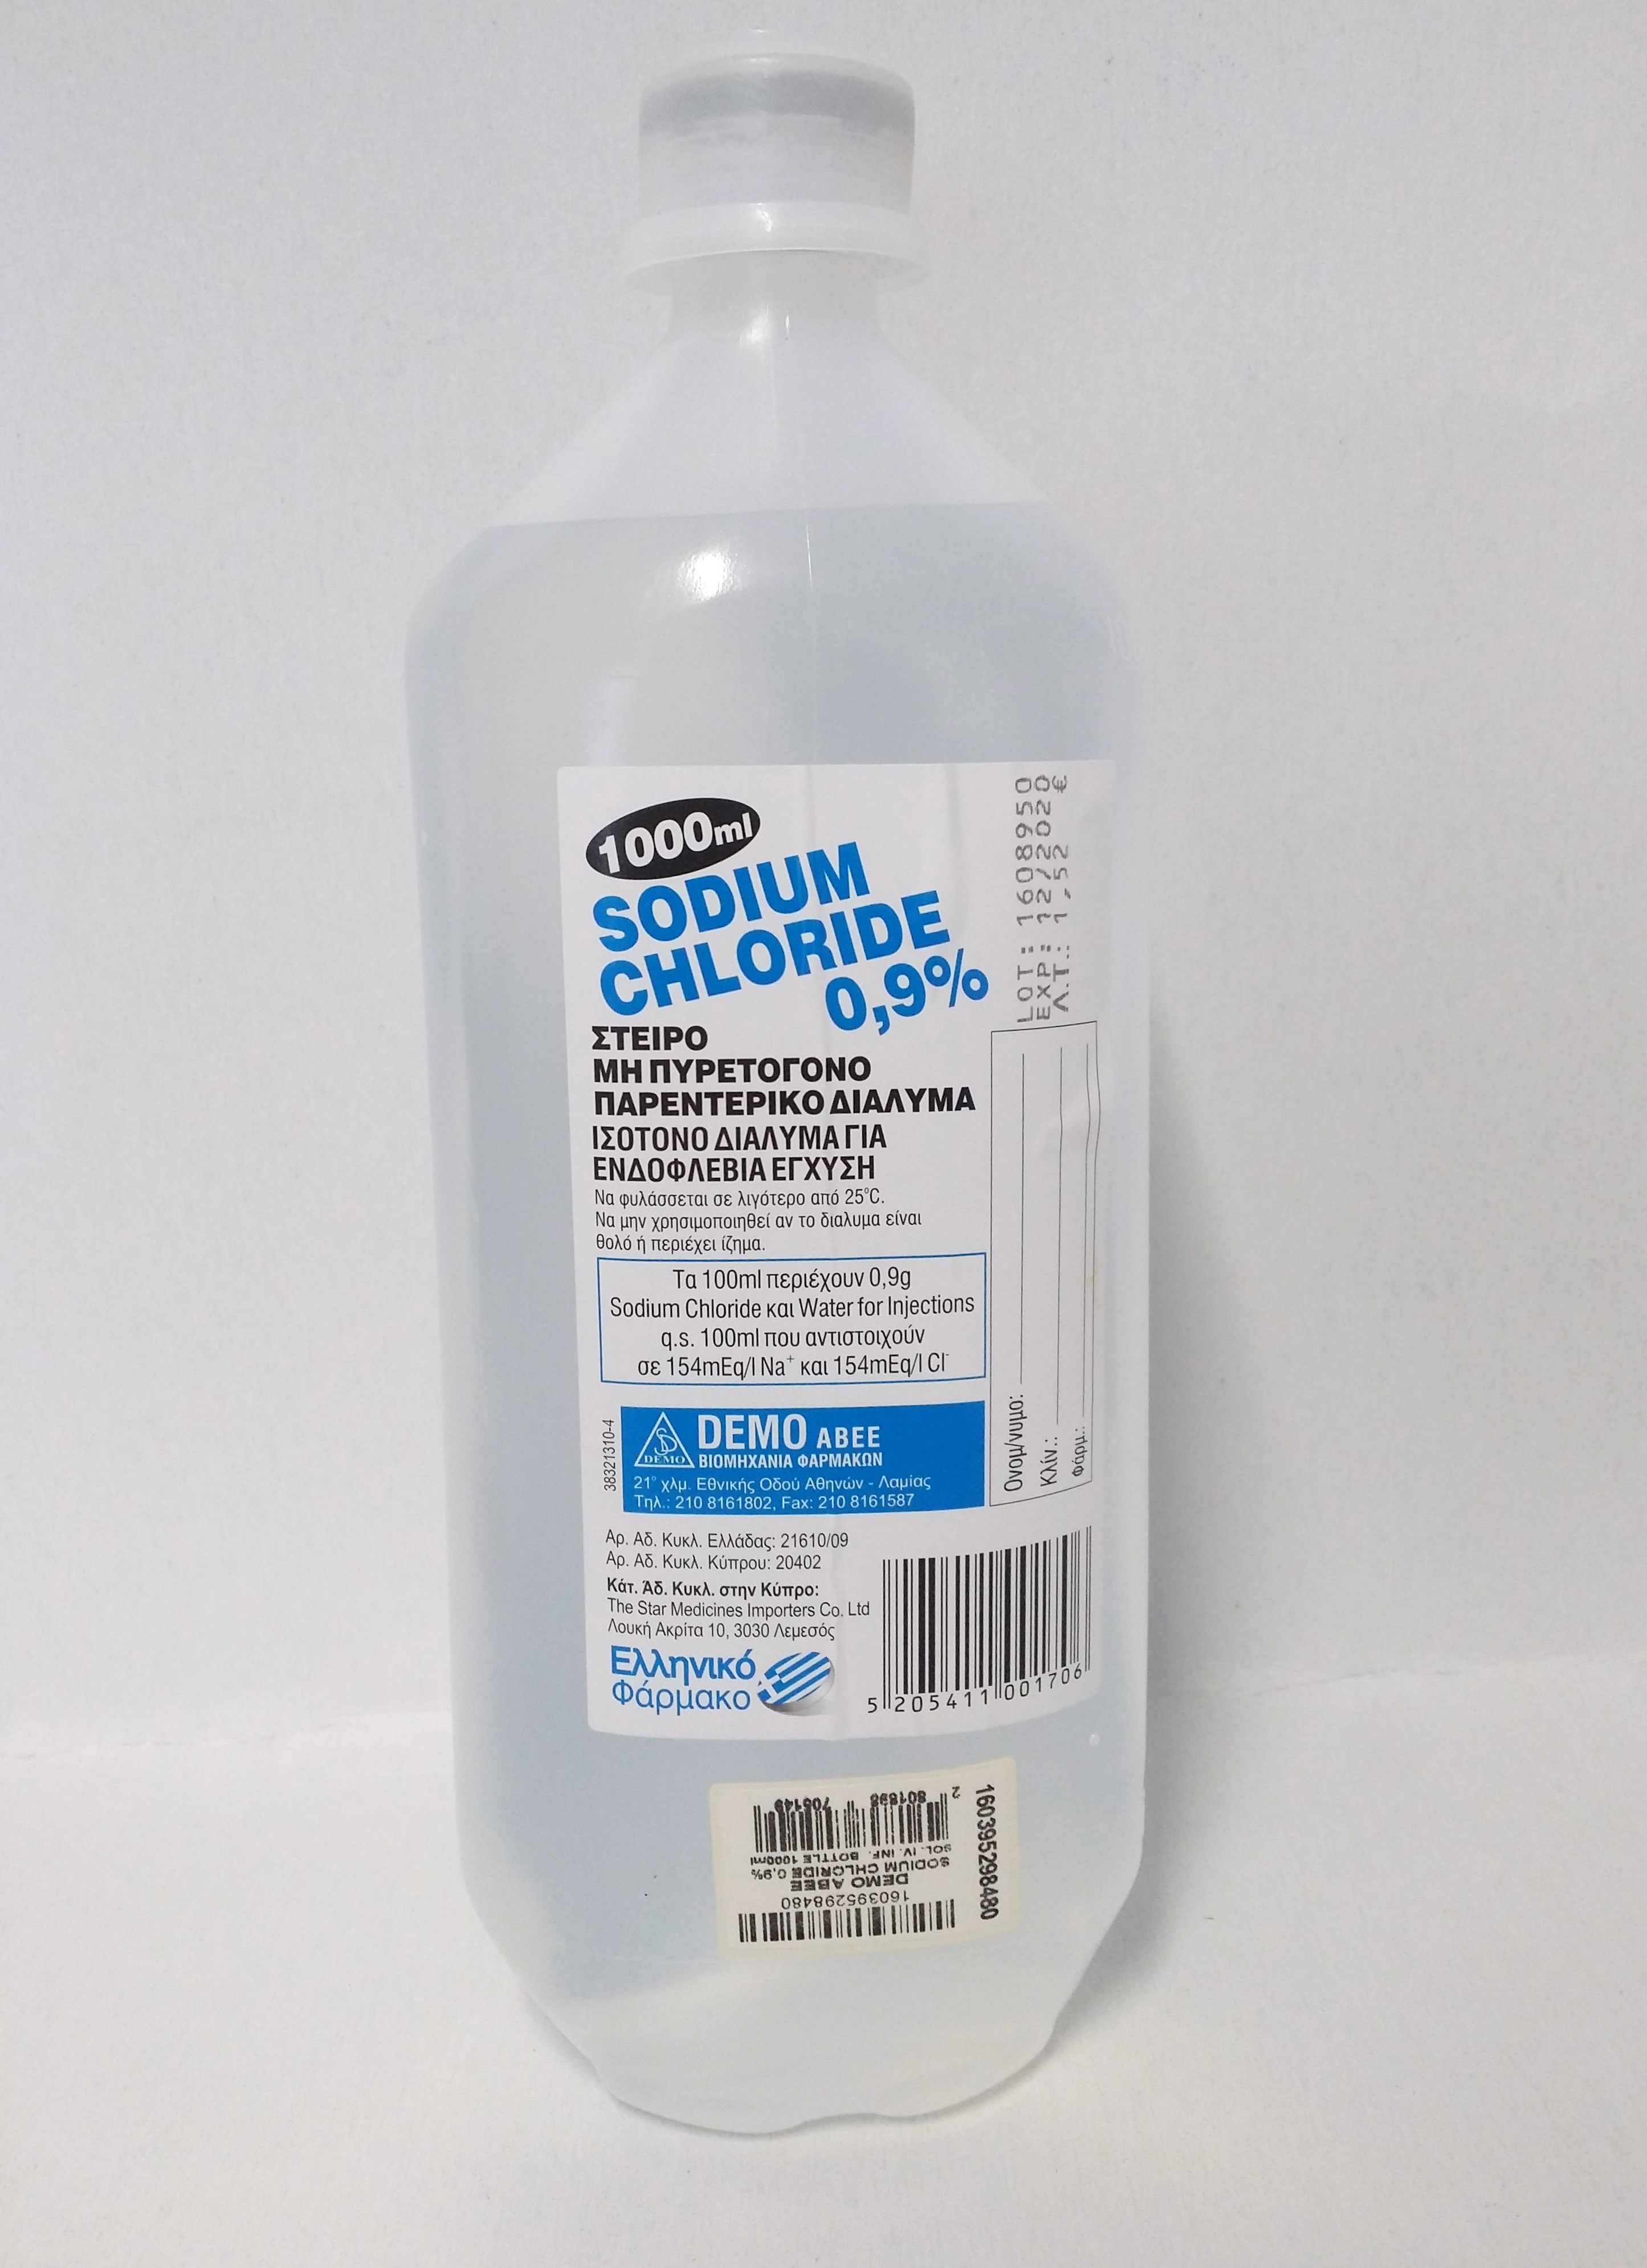 Sodium chloride Inj. 0.9%, 1000 ml